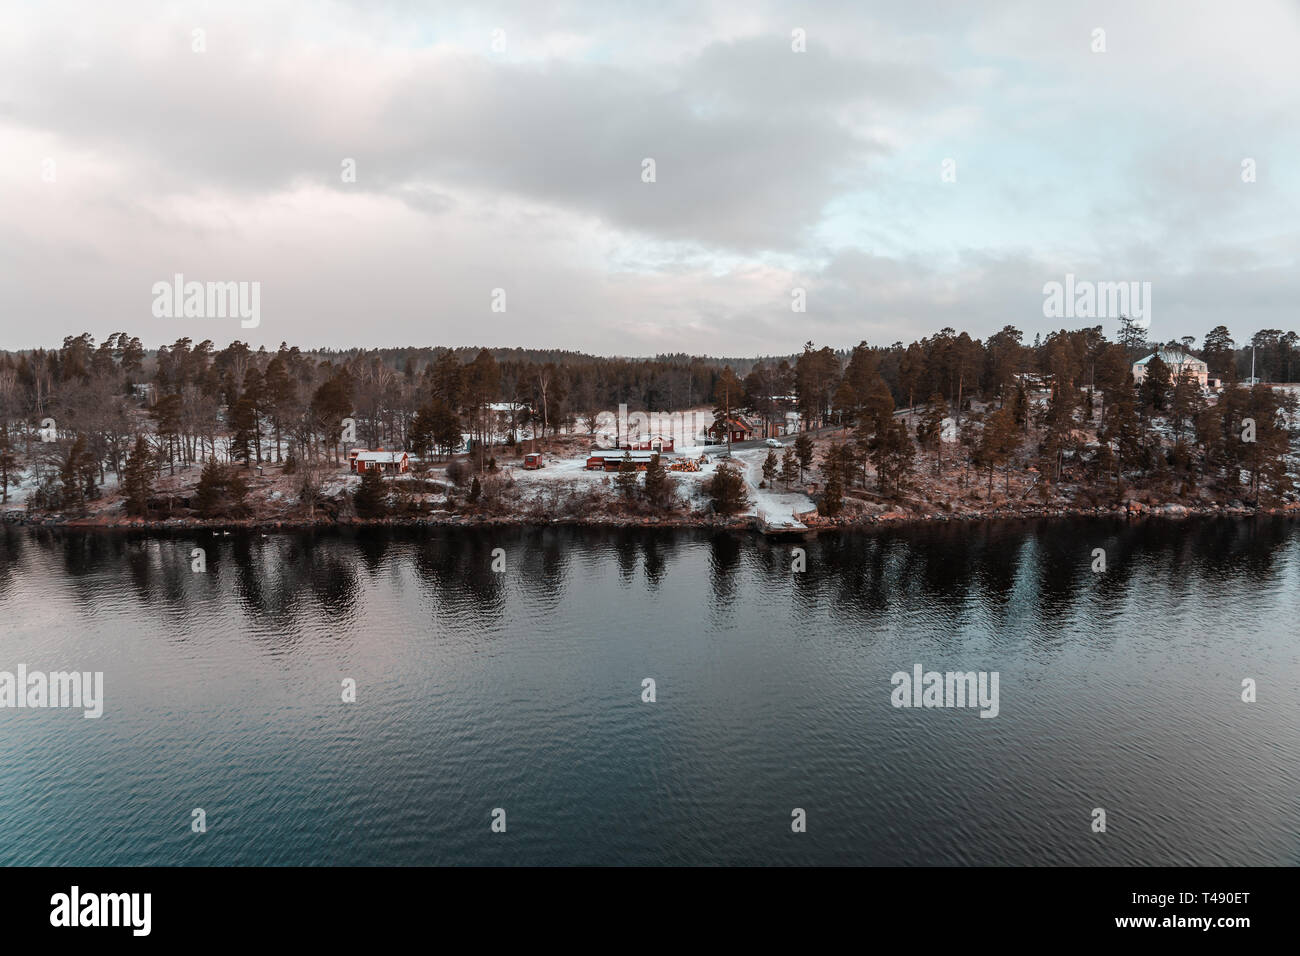 Vue de l'archipel de Stockholm avec neige au sol avec des maisons dans les bois et l'eau qui reflète, en Suède Banque D'Images